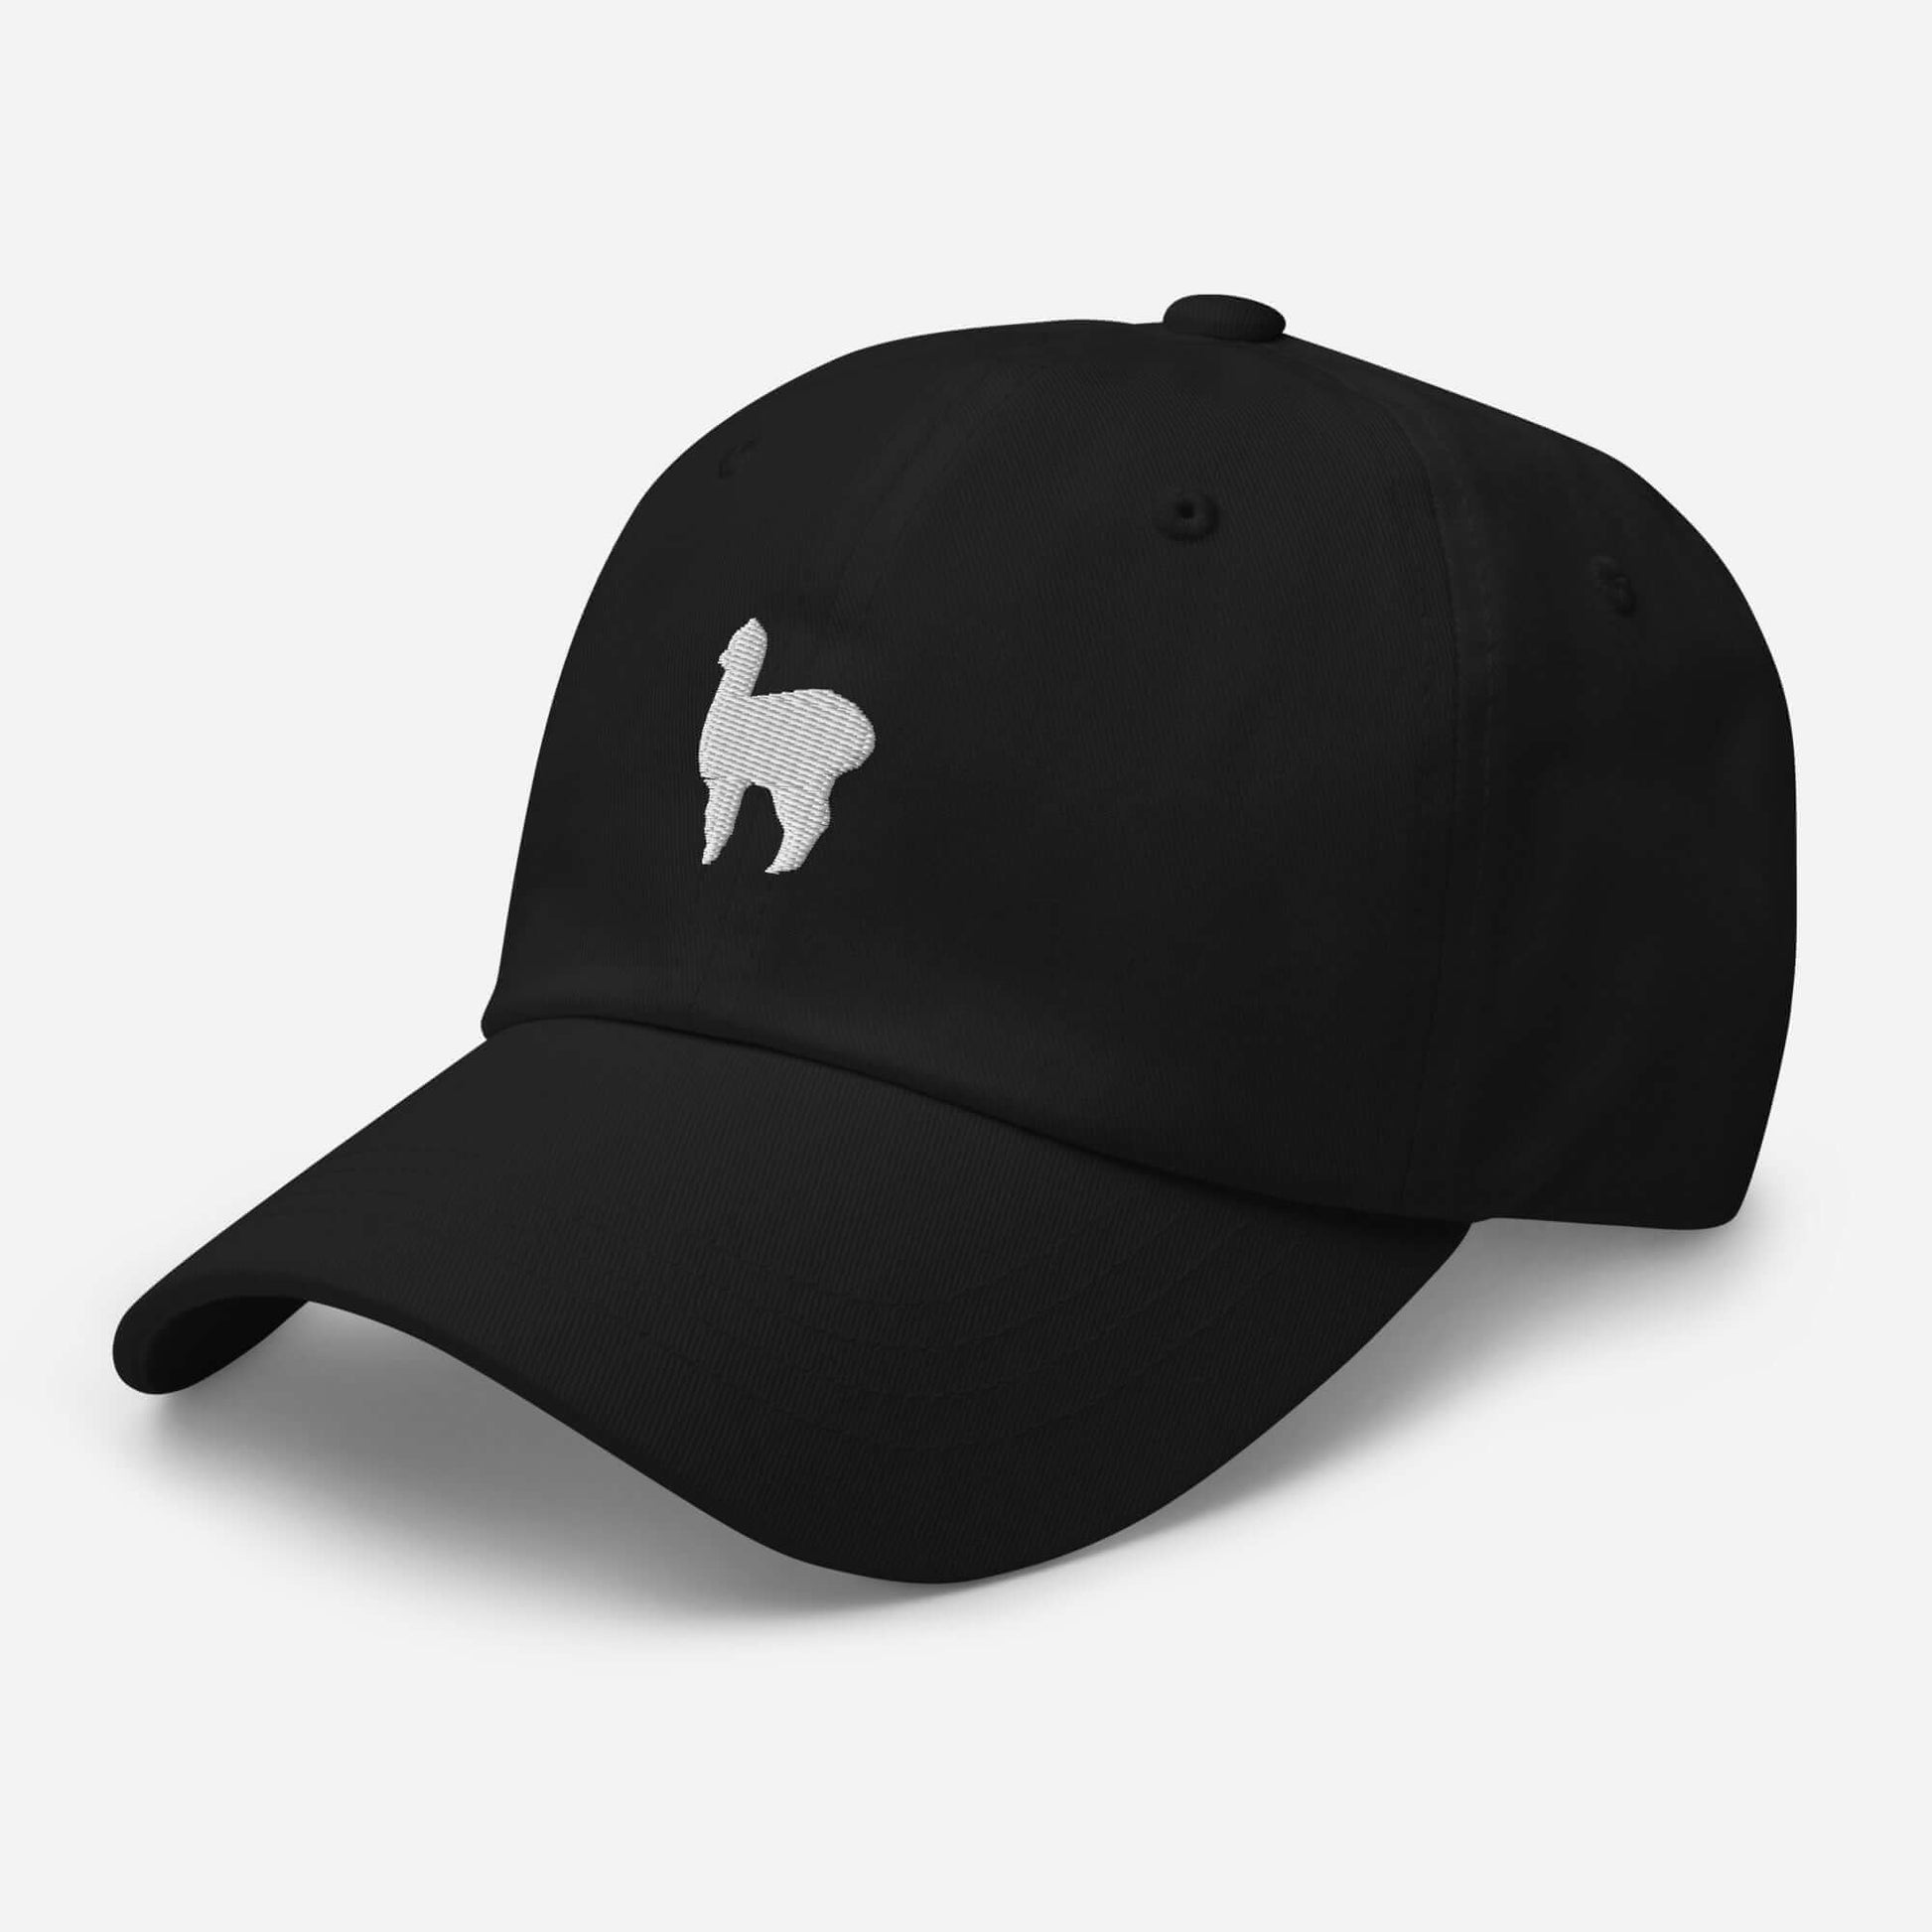 Alpaka Bestickte Cap in minimalistischem Design, aus Baumwoll-Chino-Mix